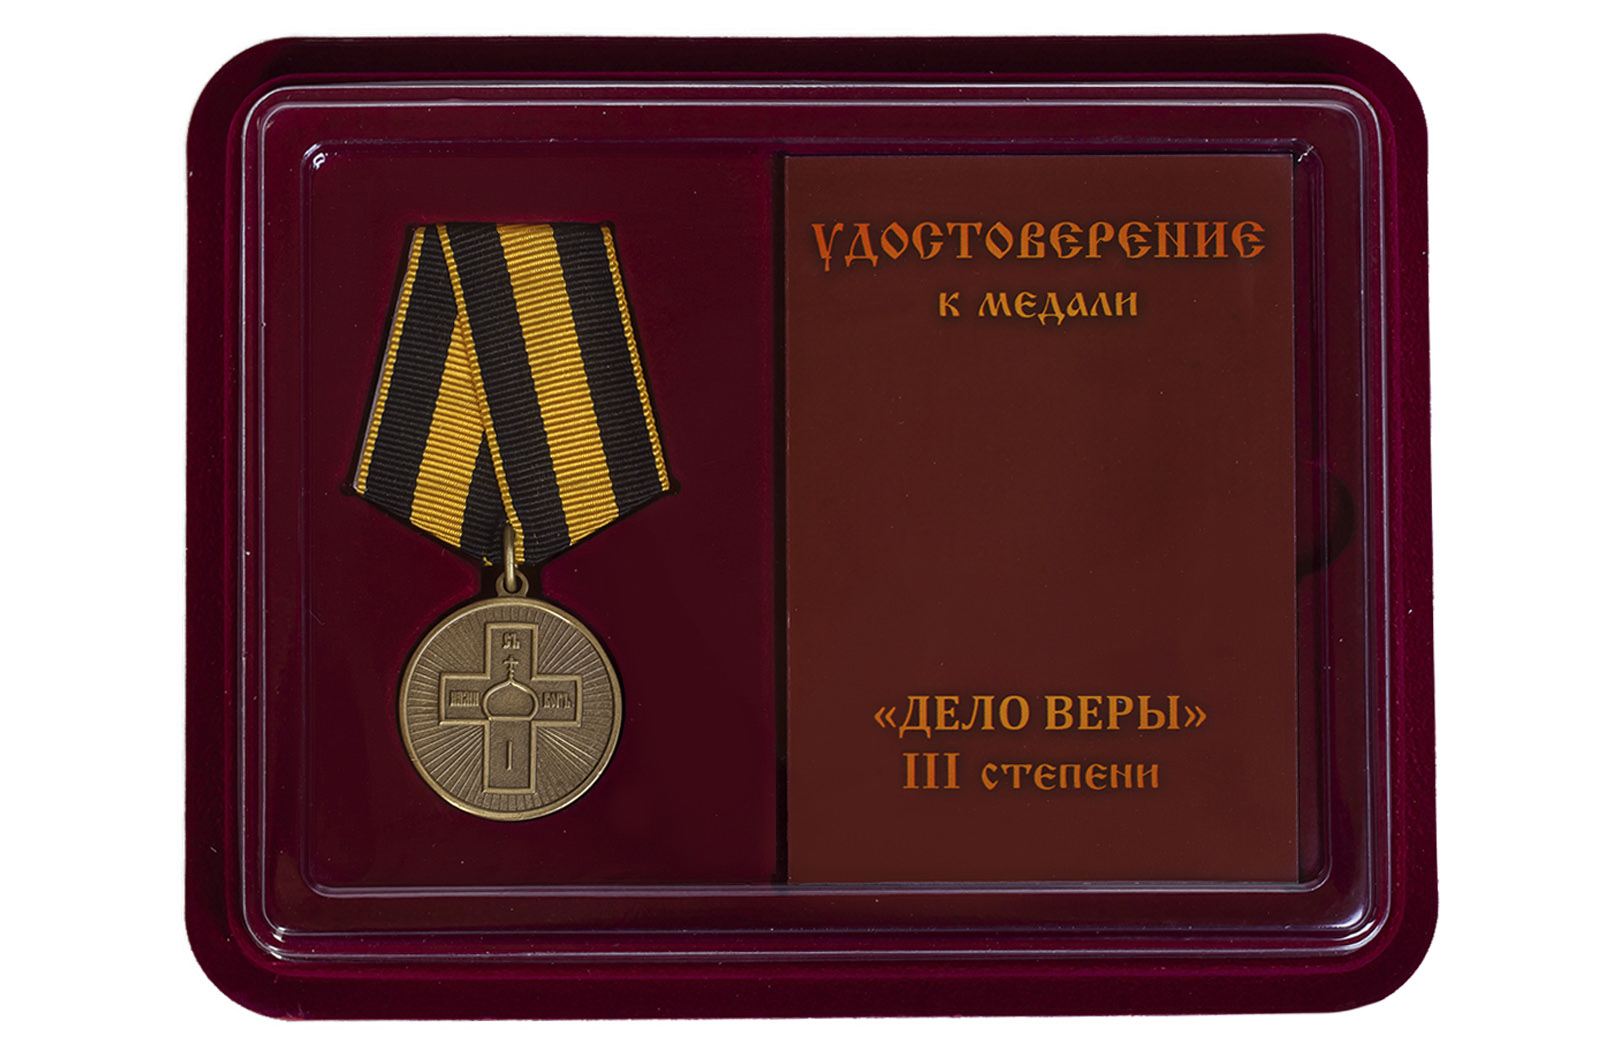 Купить православную медаль Дело Веры 3 степени оптом или в розницу